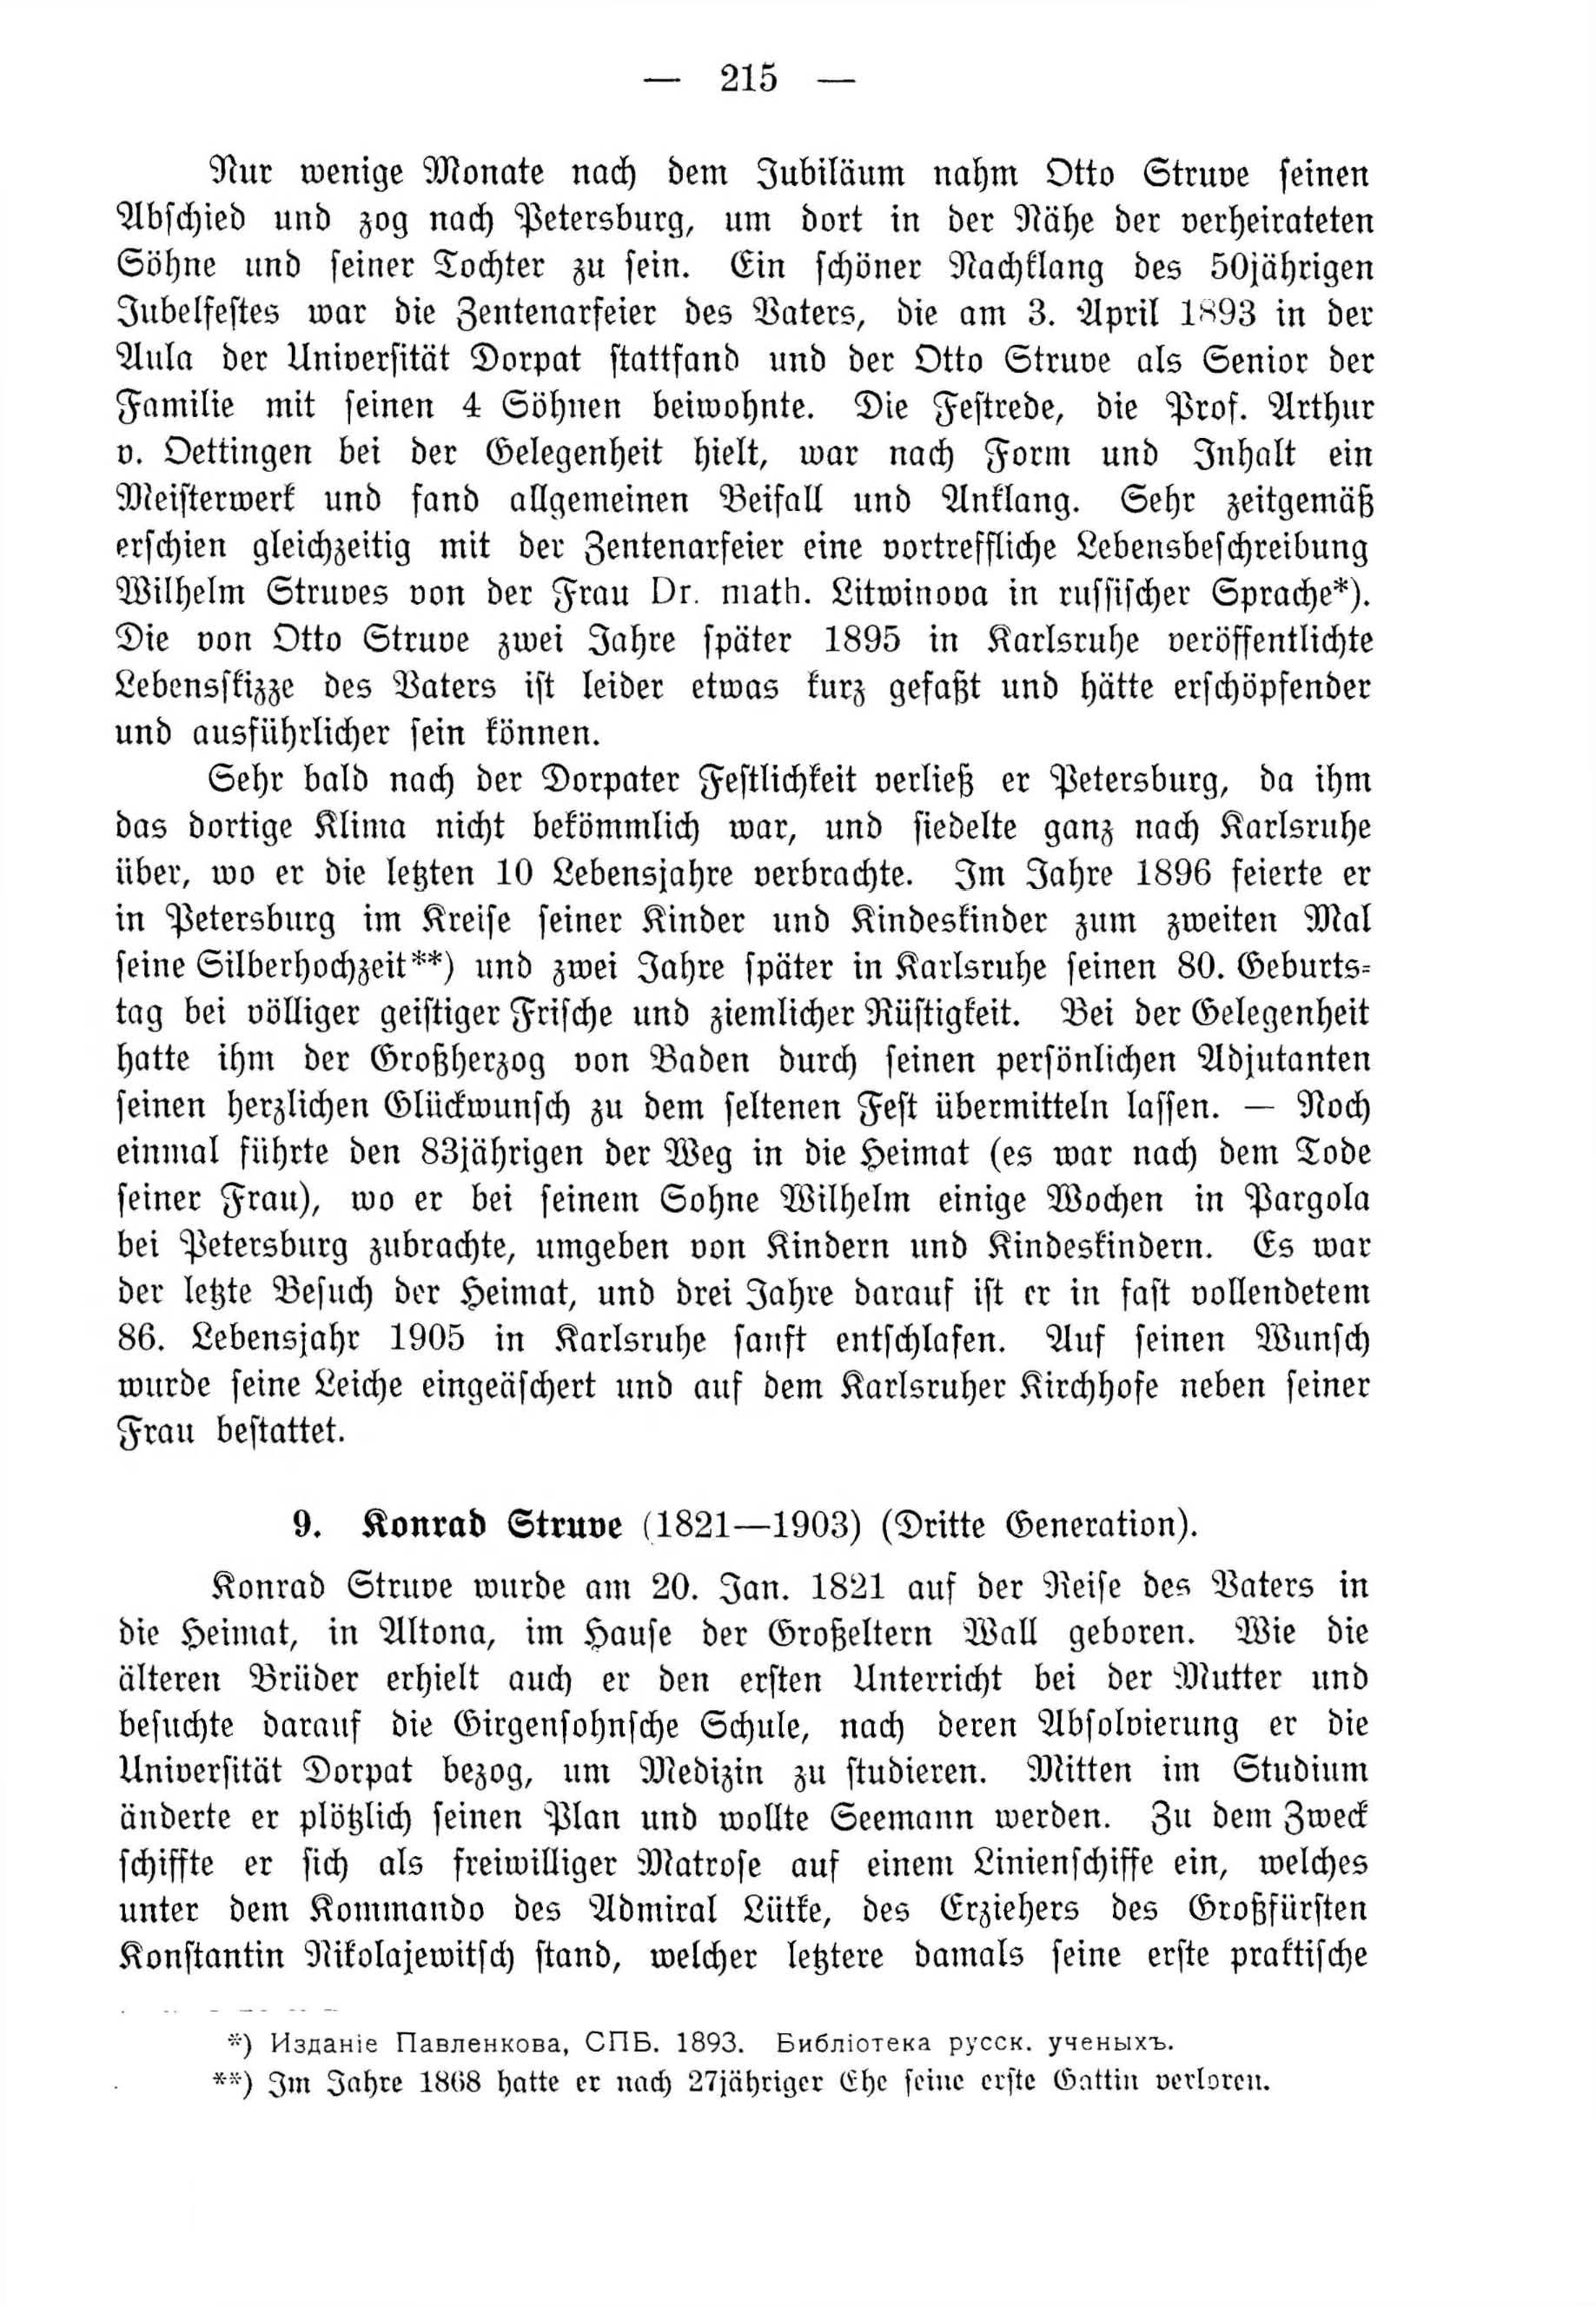 Deutsche Monatsschrift für Russland [4] (1915) | 215. (215) Основной текст